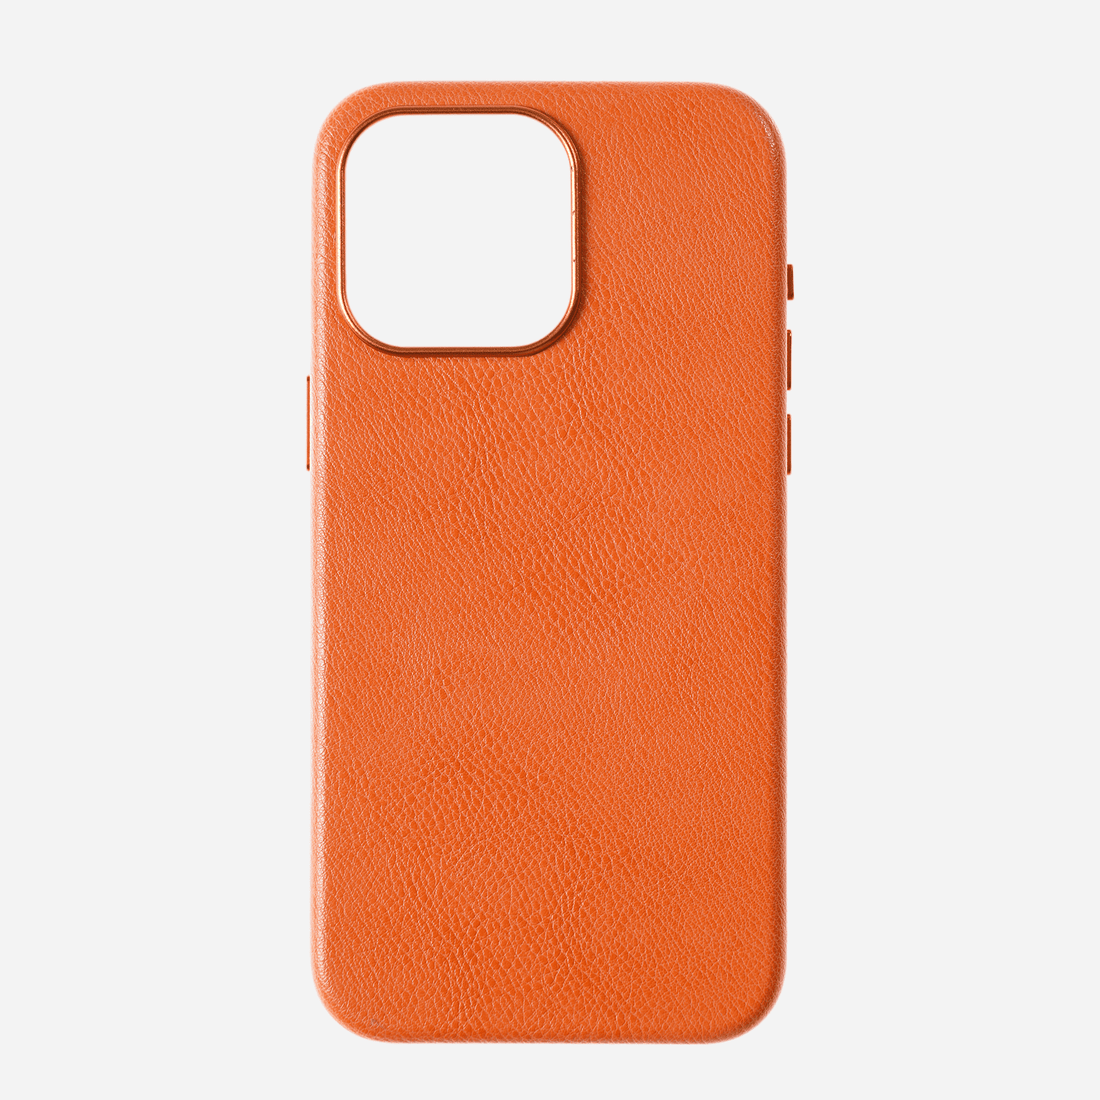 leathercase-Orange-1-1600